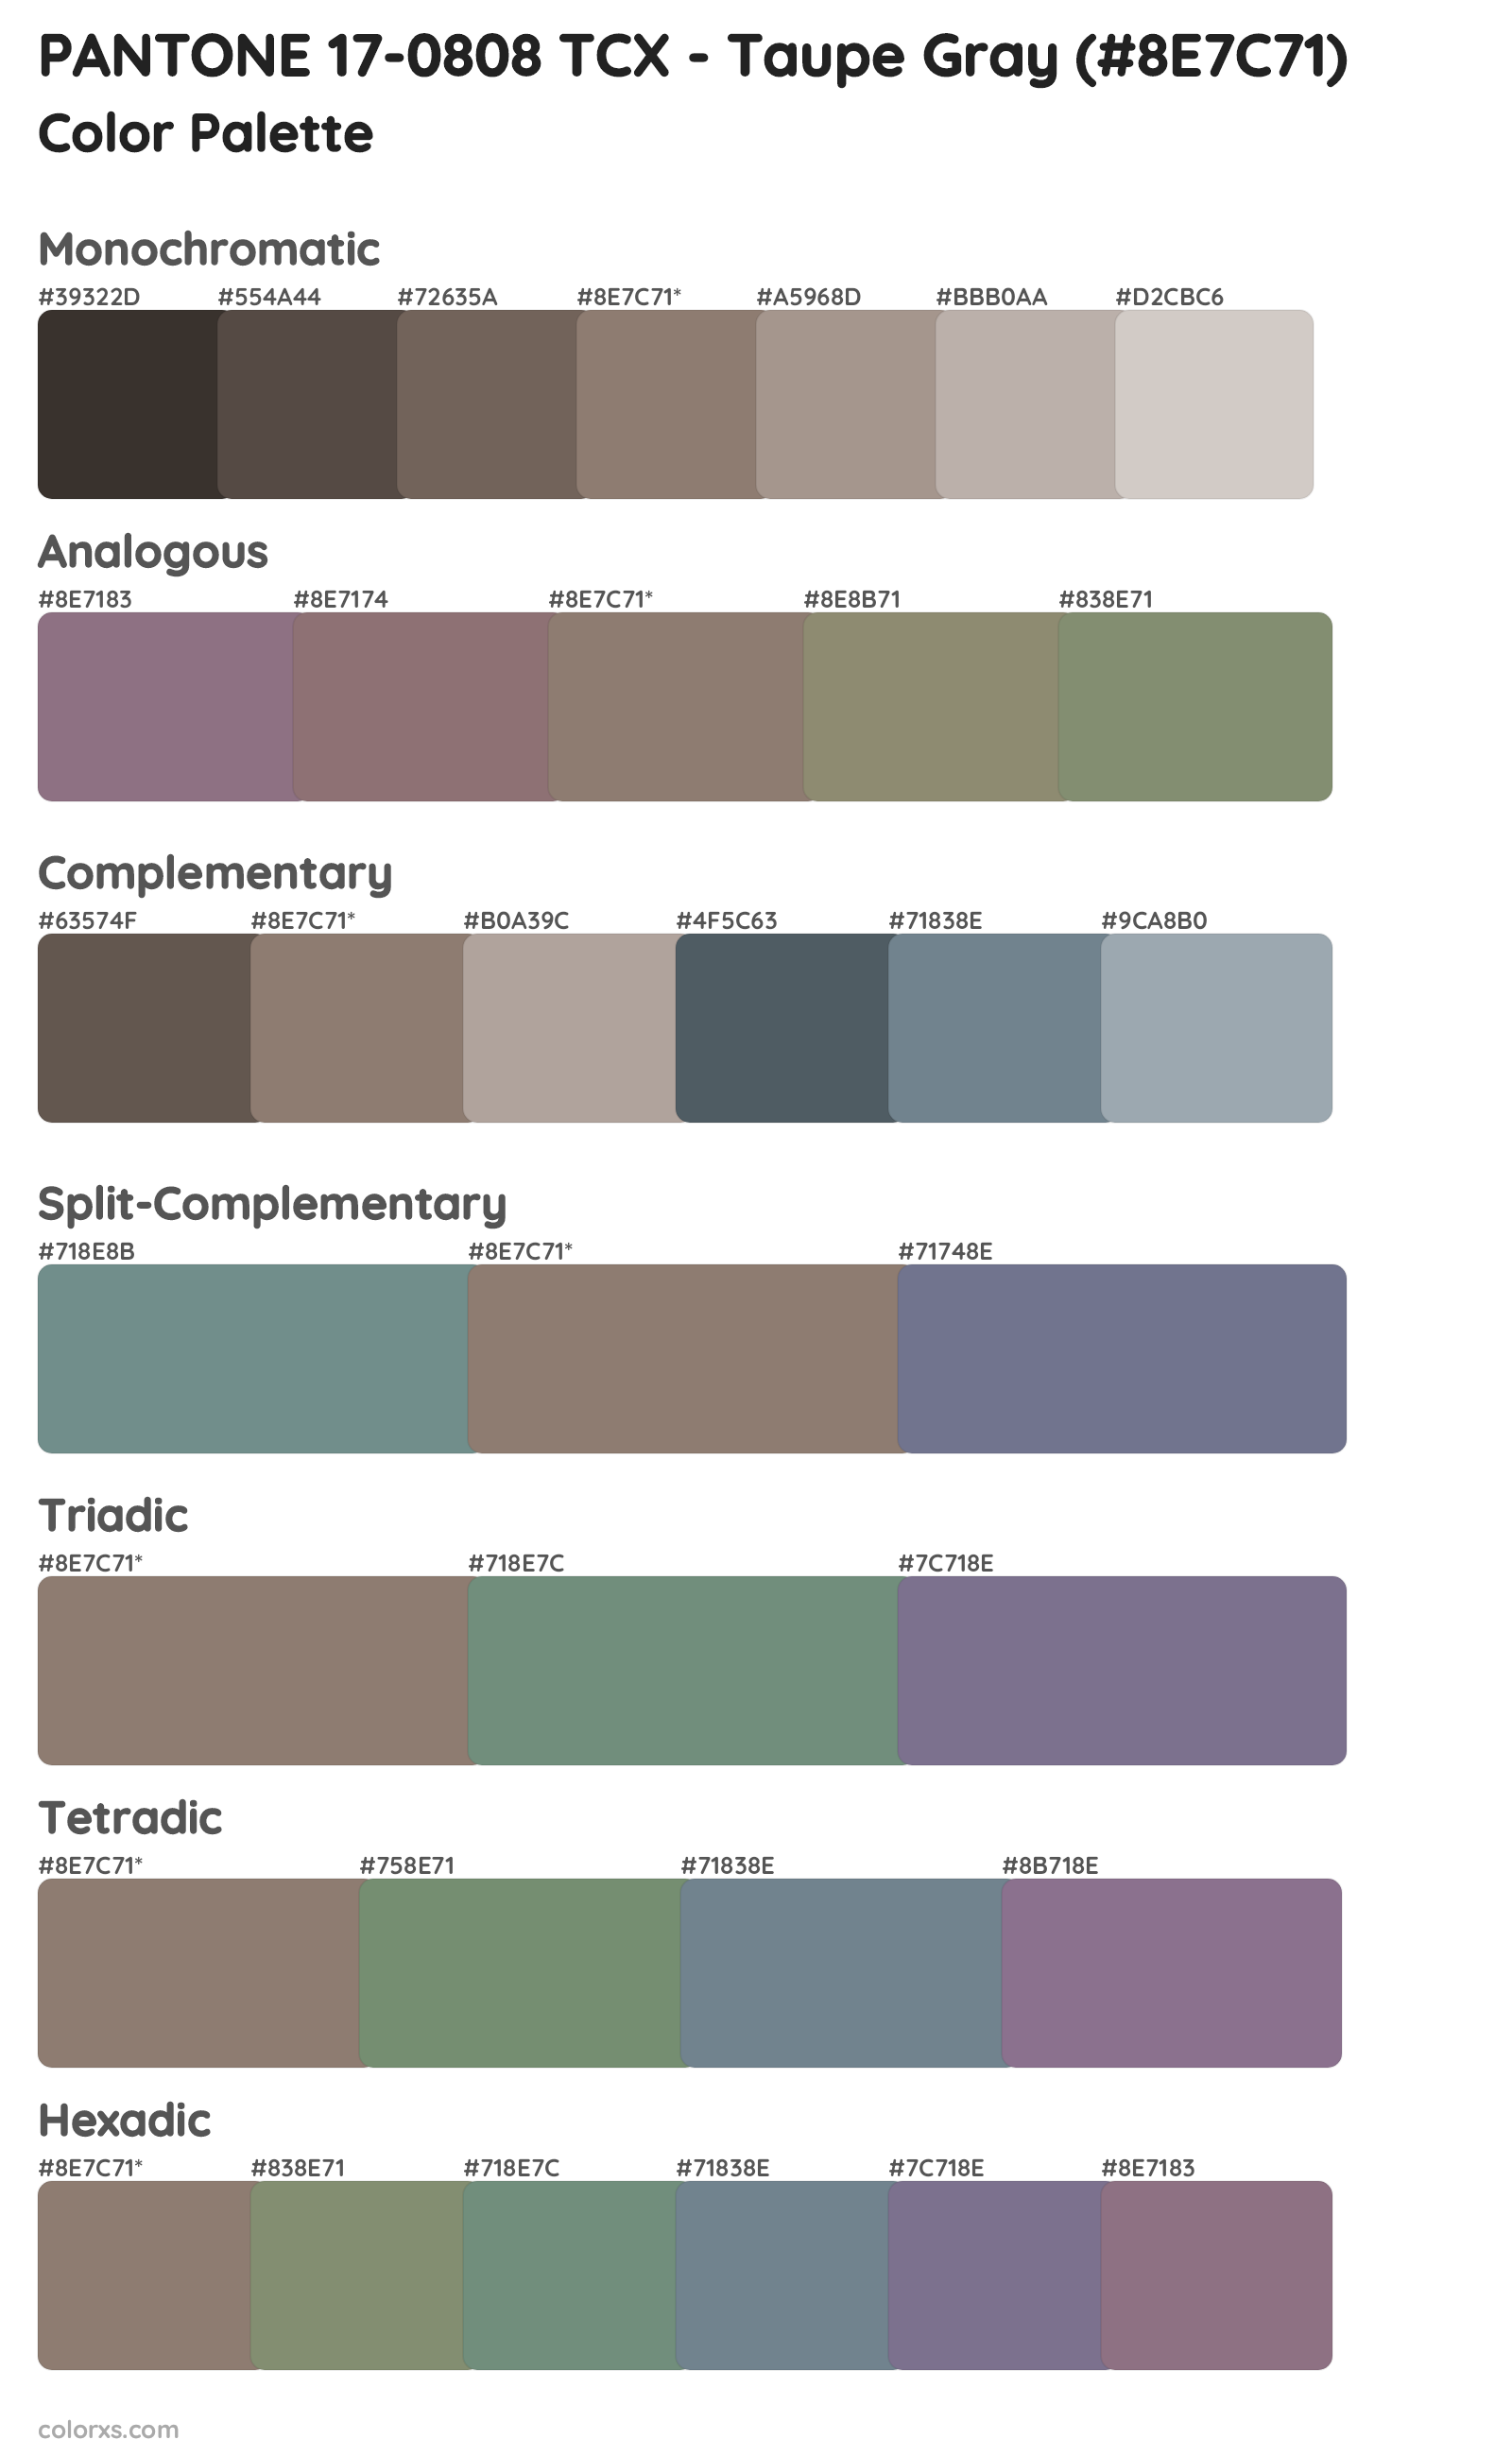 PANTONE 17-0808 TCX - Taupe Gray Color Scheme Palettes